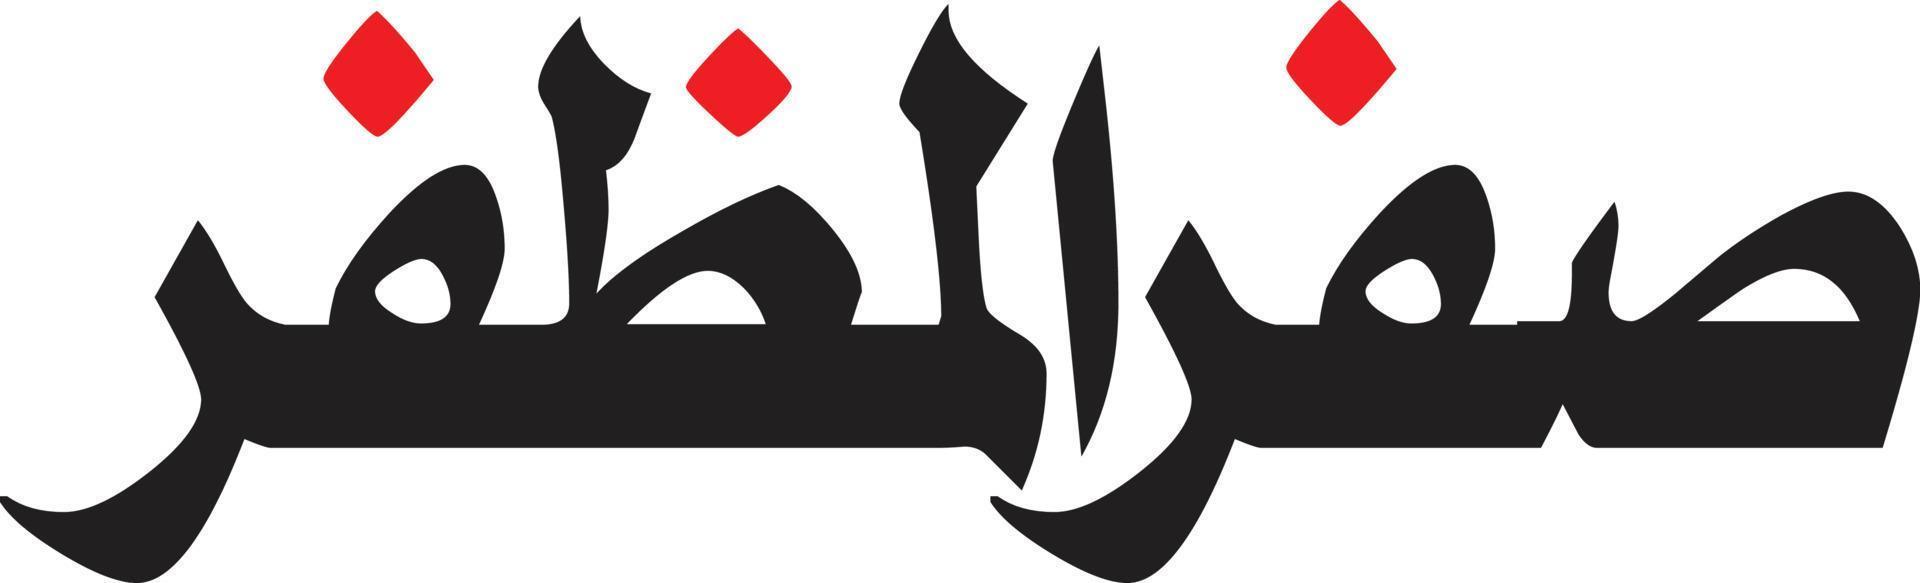 sofer al muzfer vetor livre de caligrafia árabe islâmica